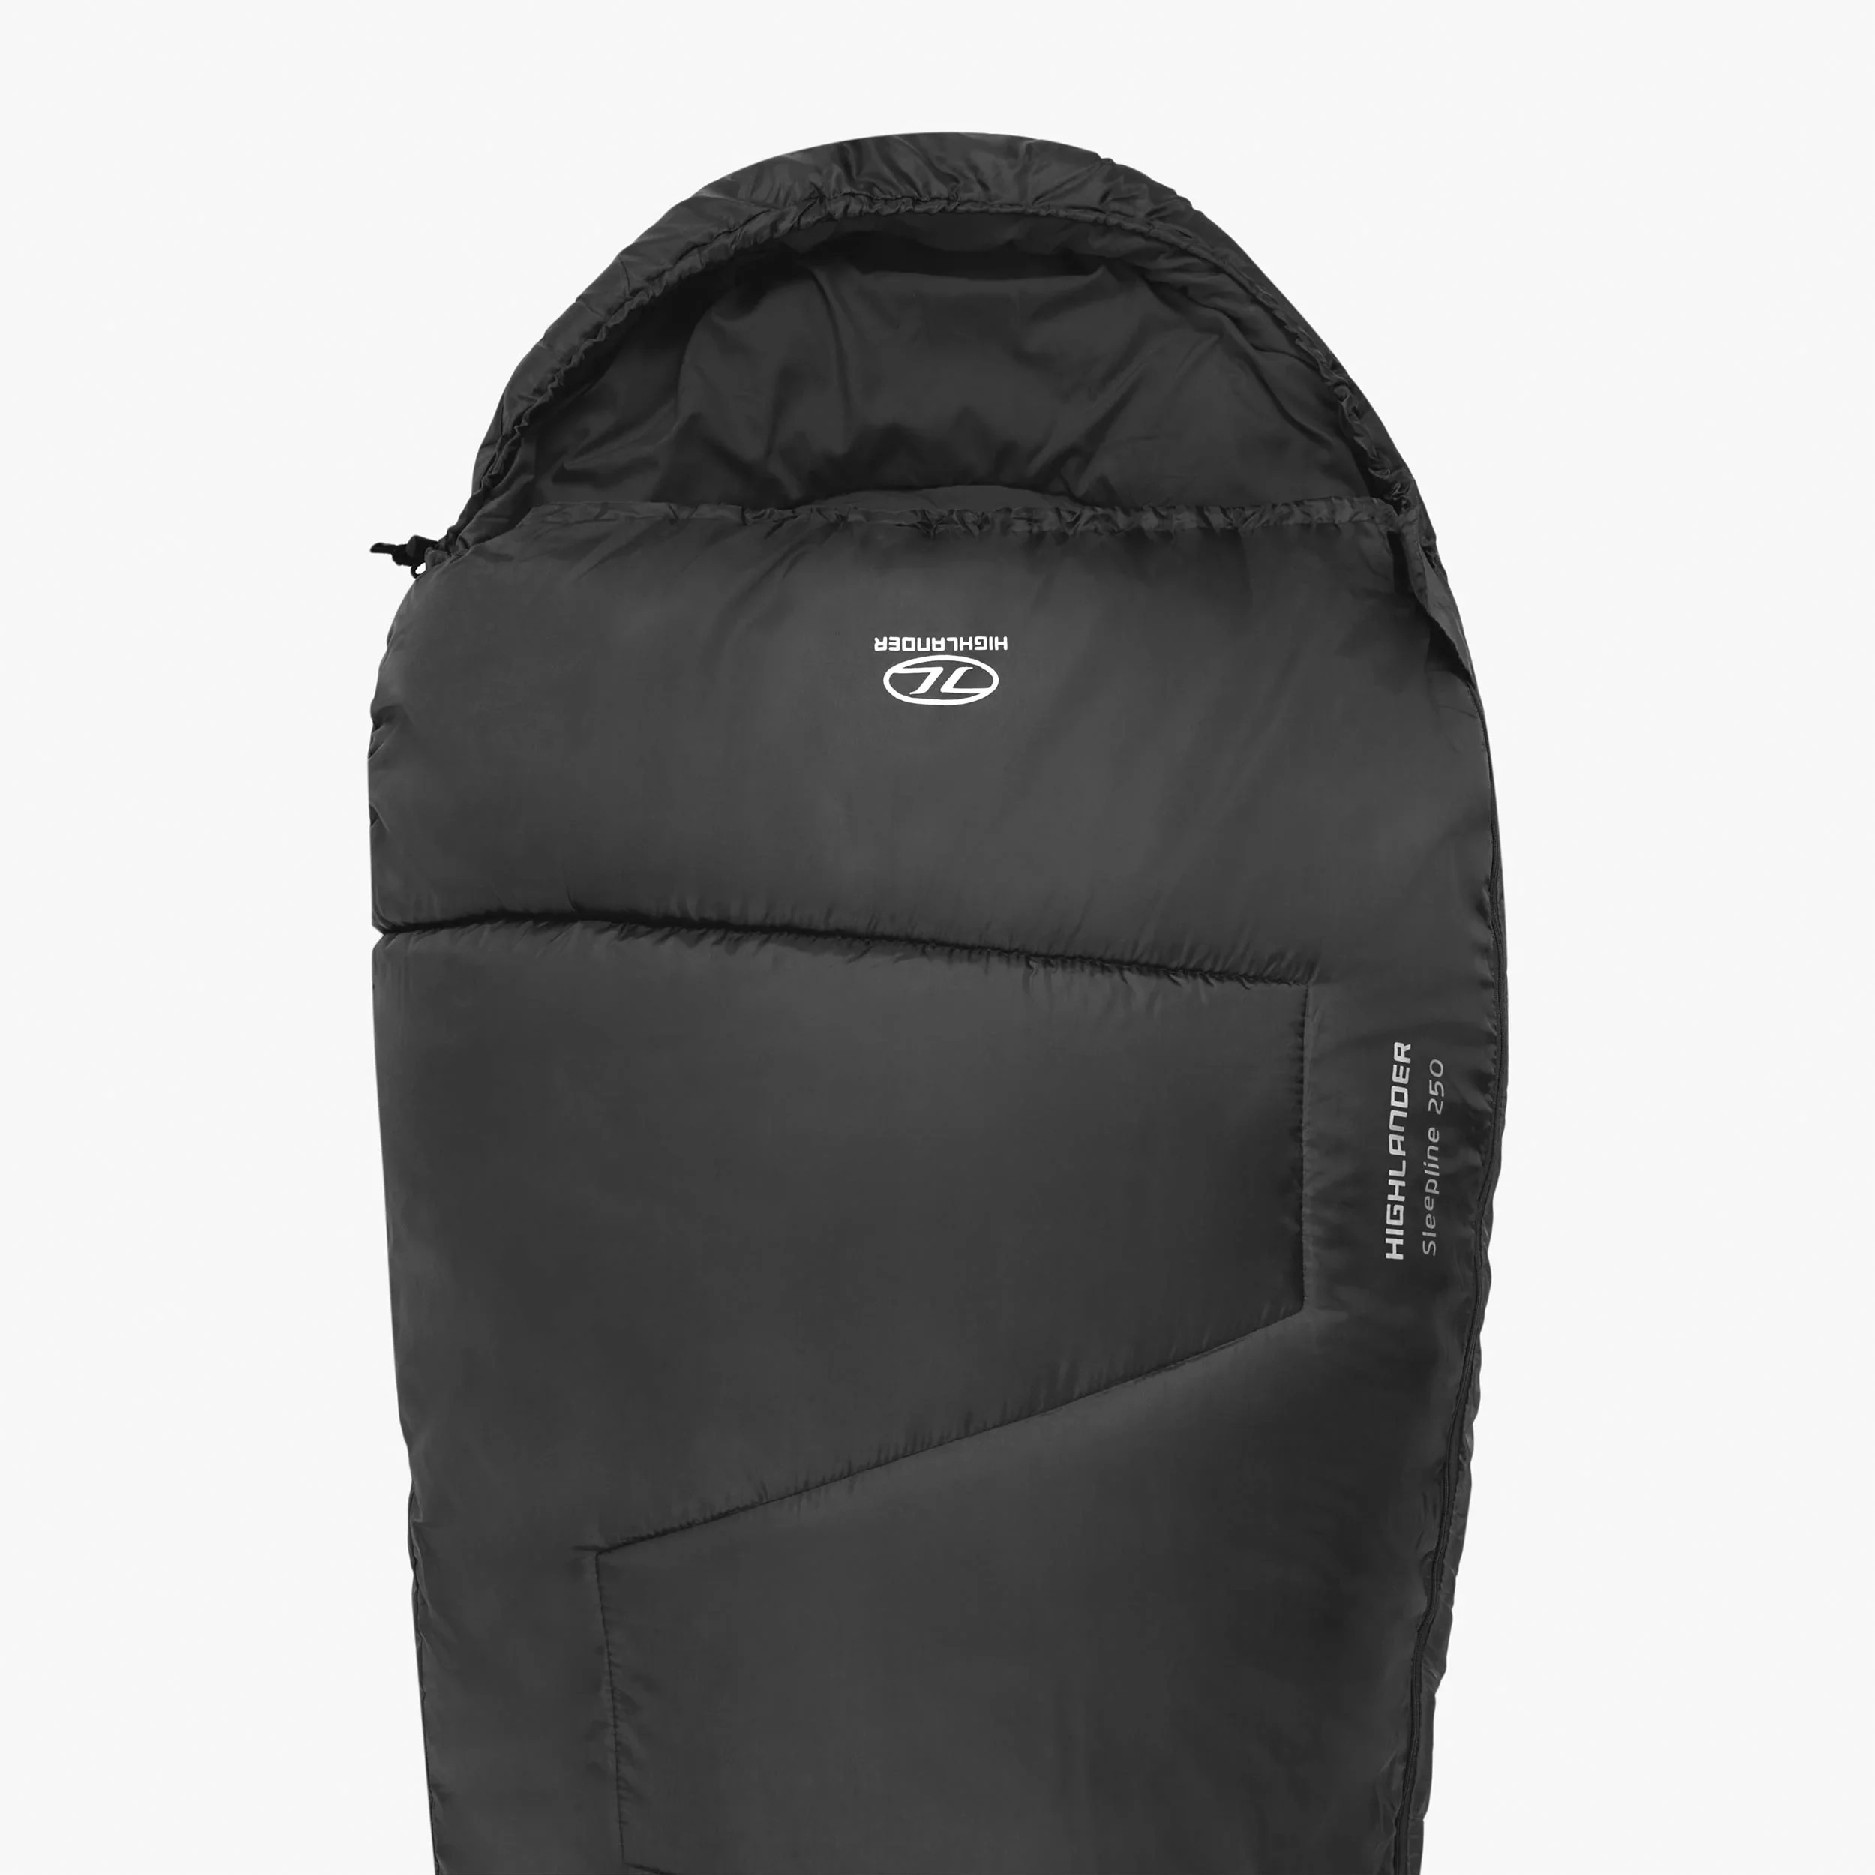 Highlander Sleeping Bag SB035